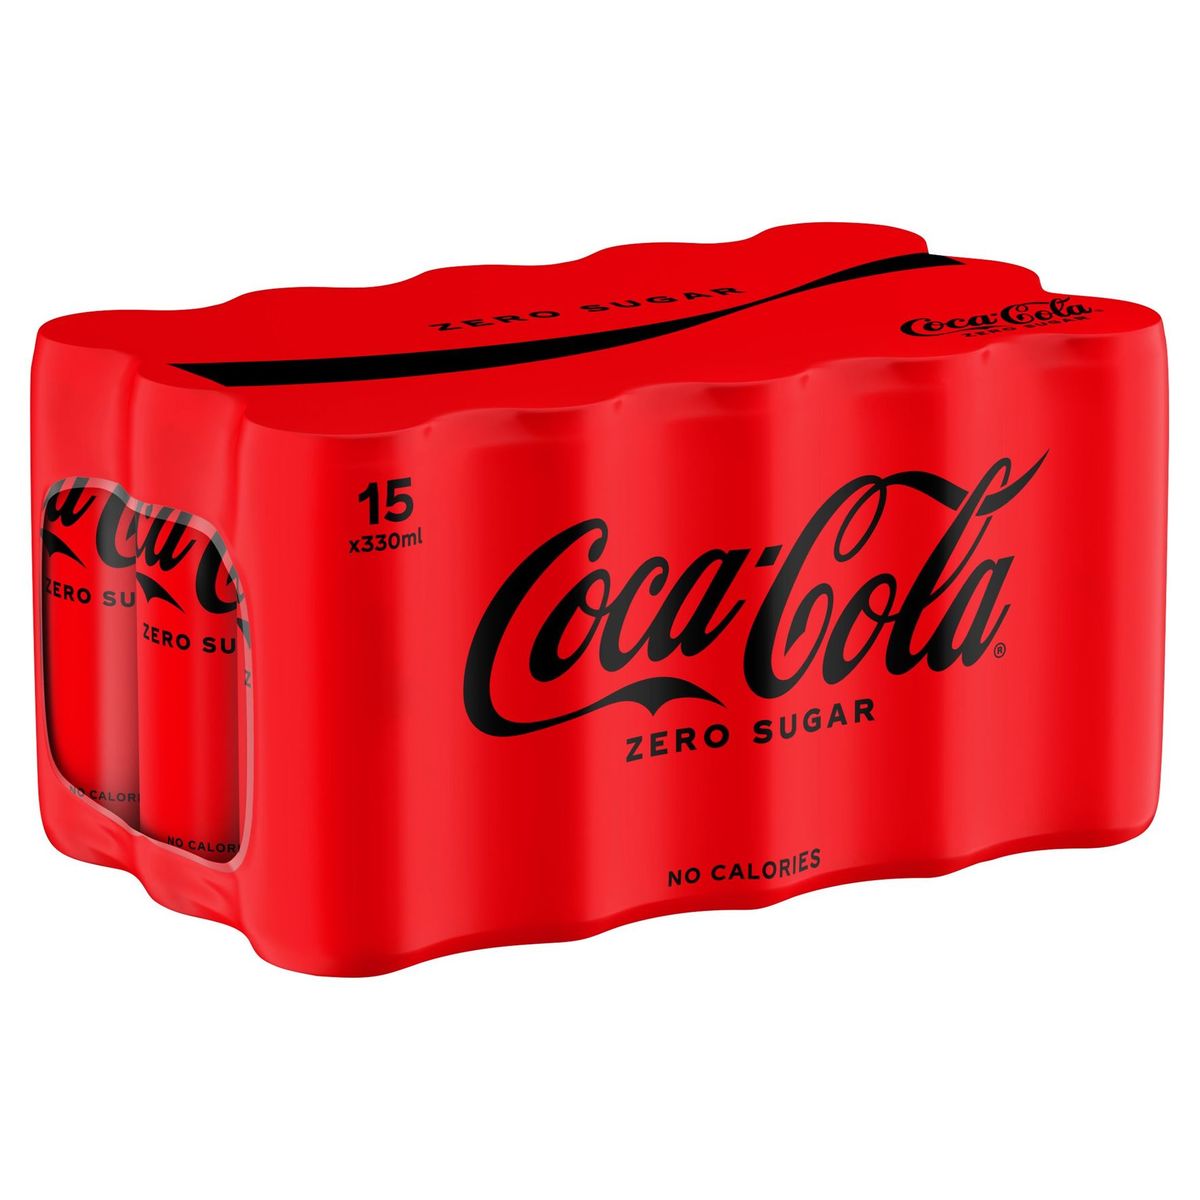 Coca-Cola Zero Sugar Coke Soft drink 15 x 330 ml